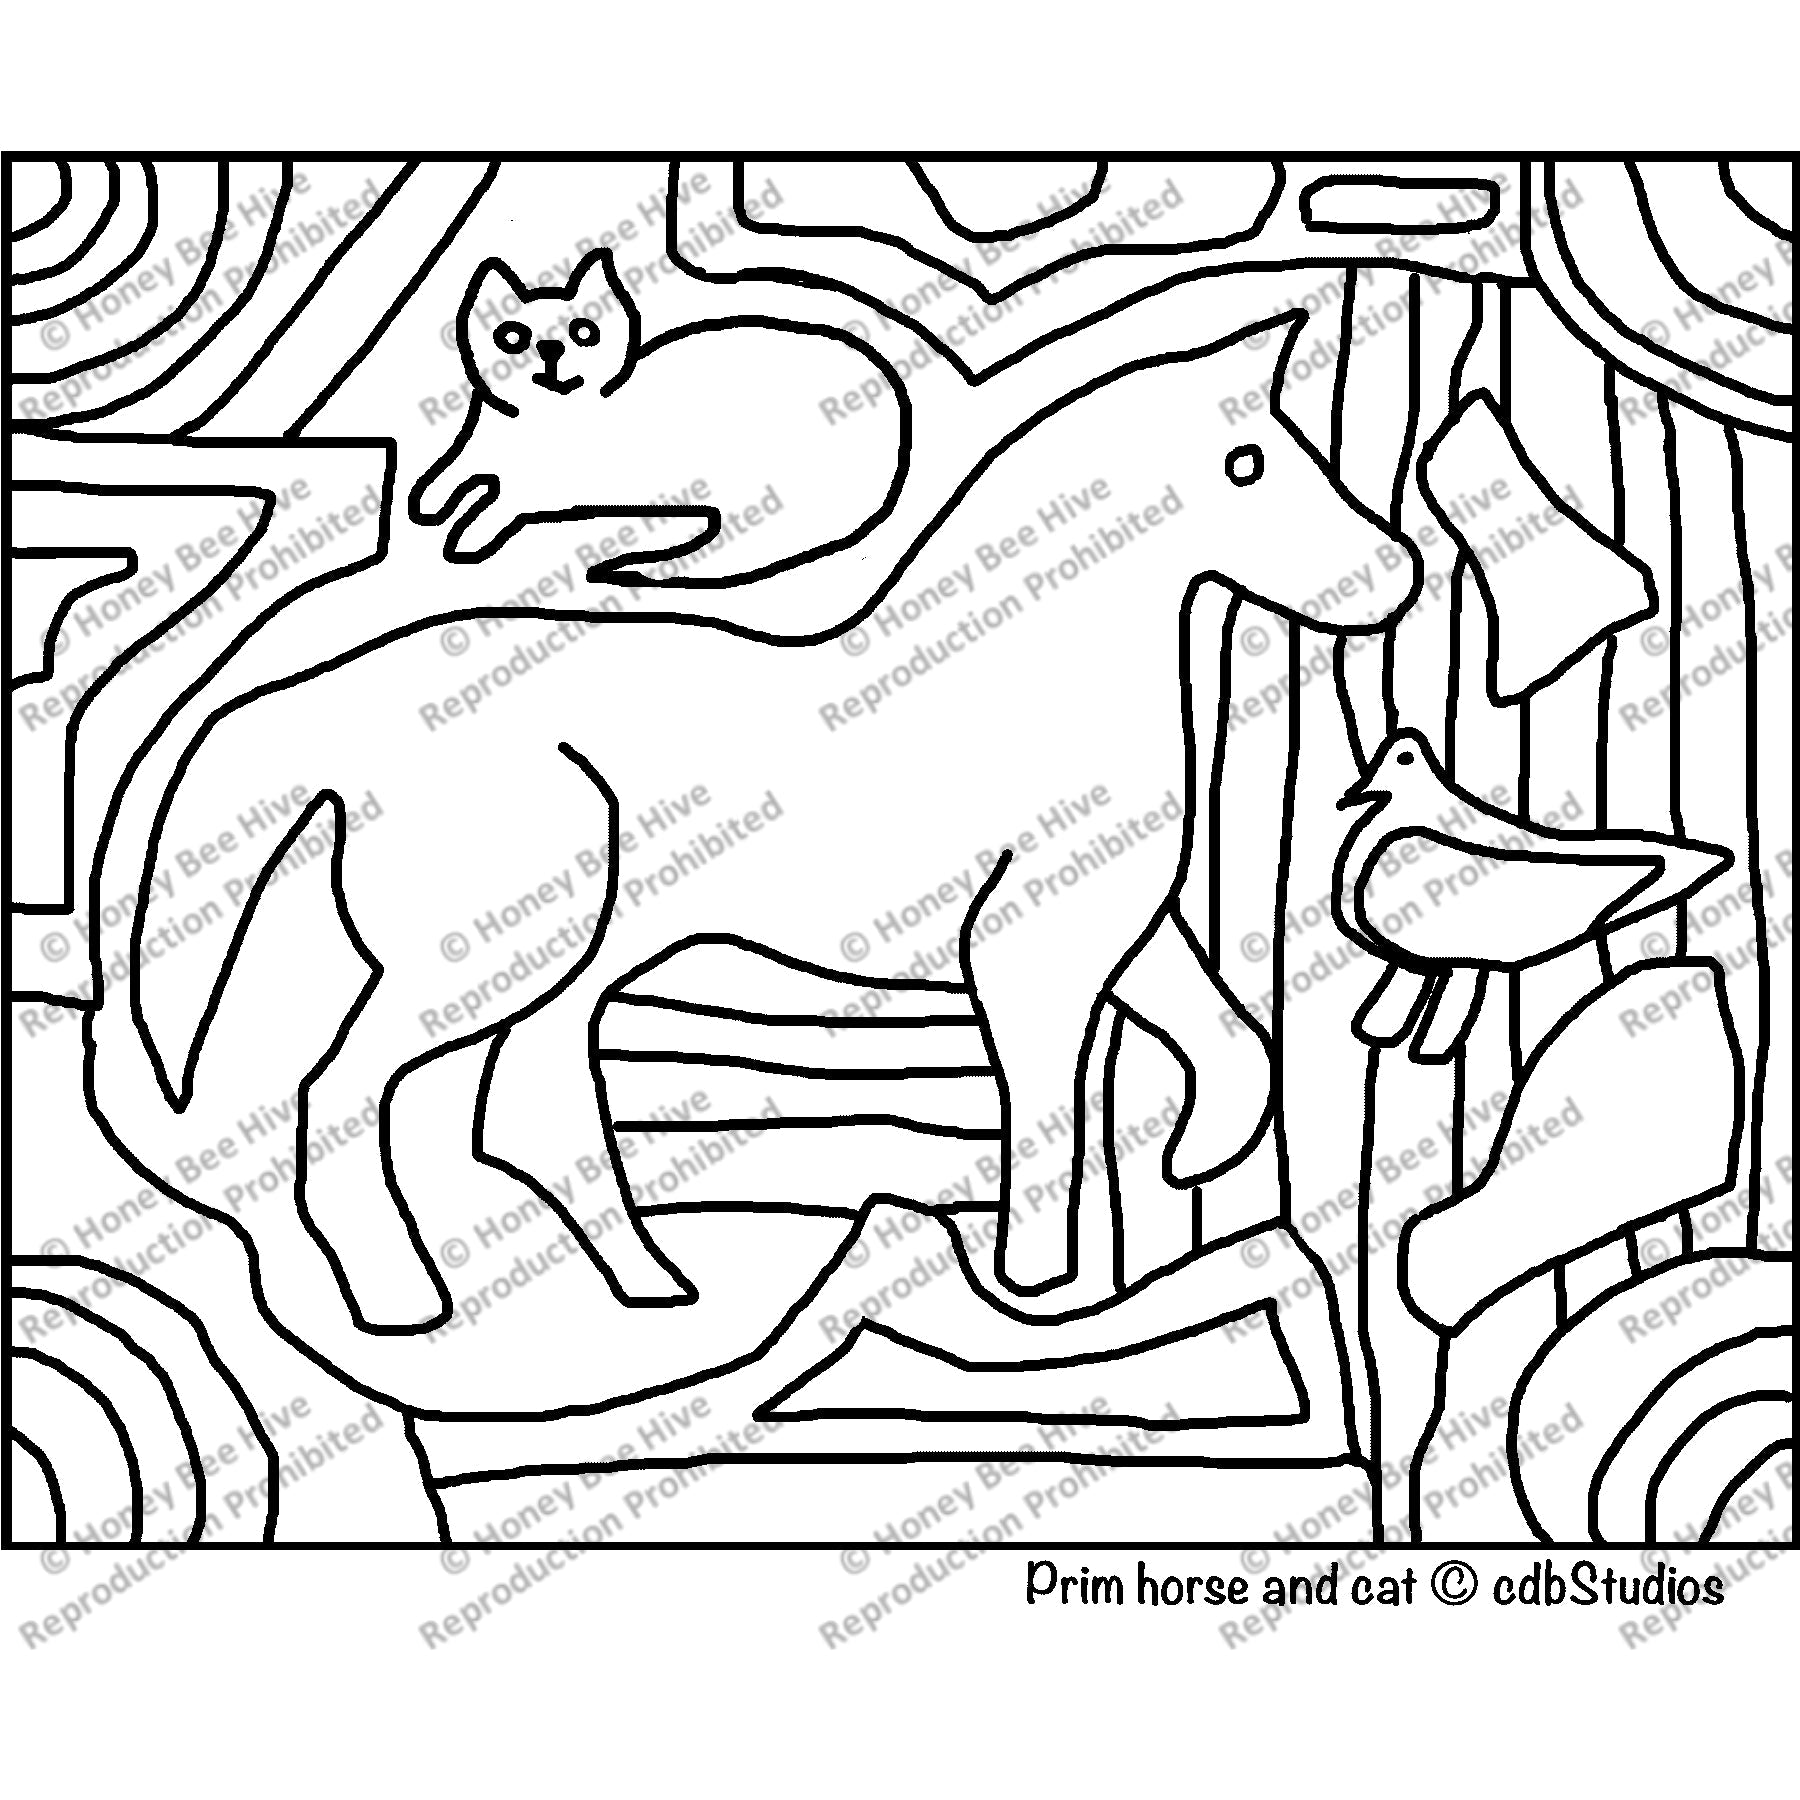 Prim Horse, rug hooking pattern